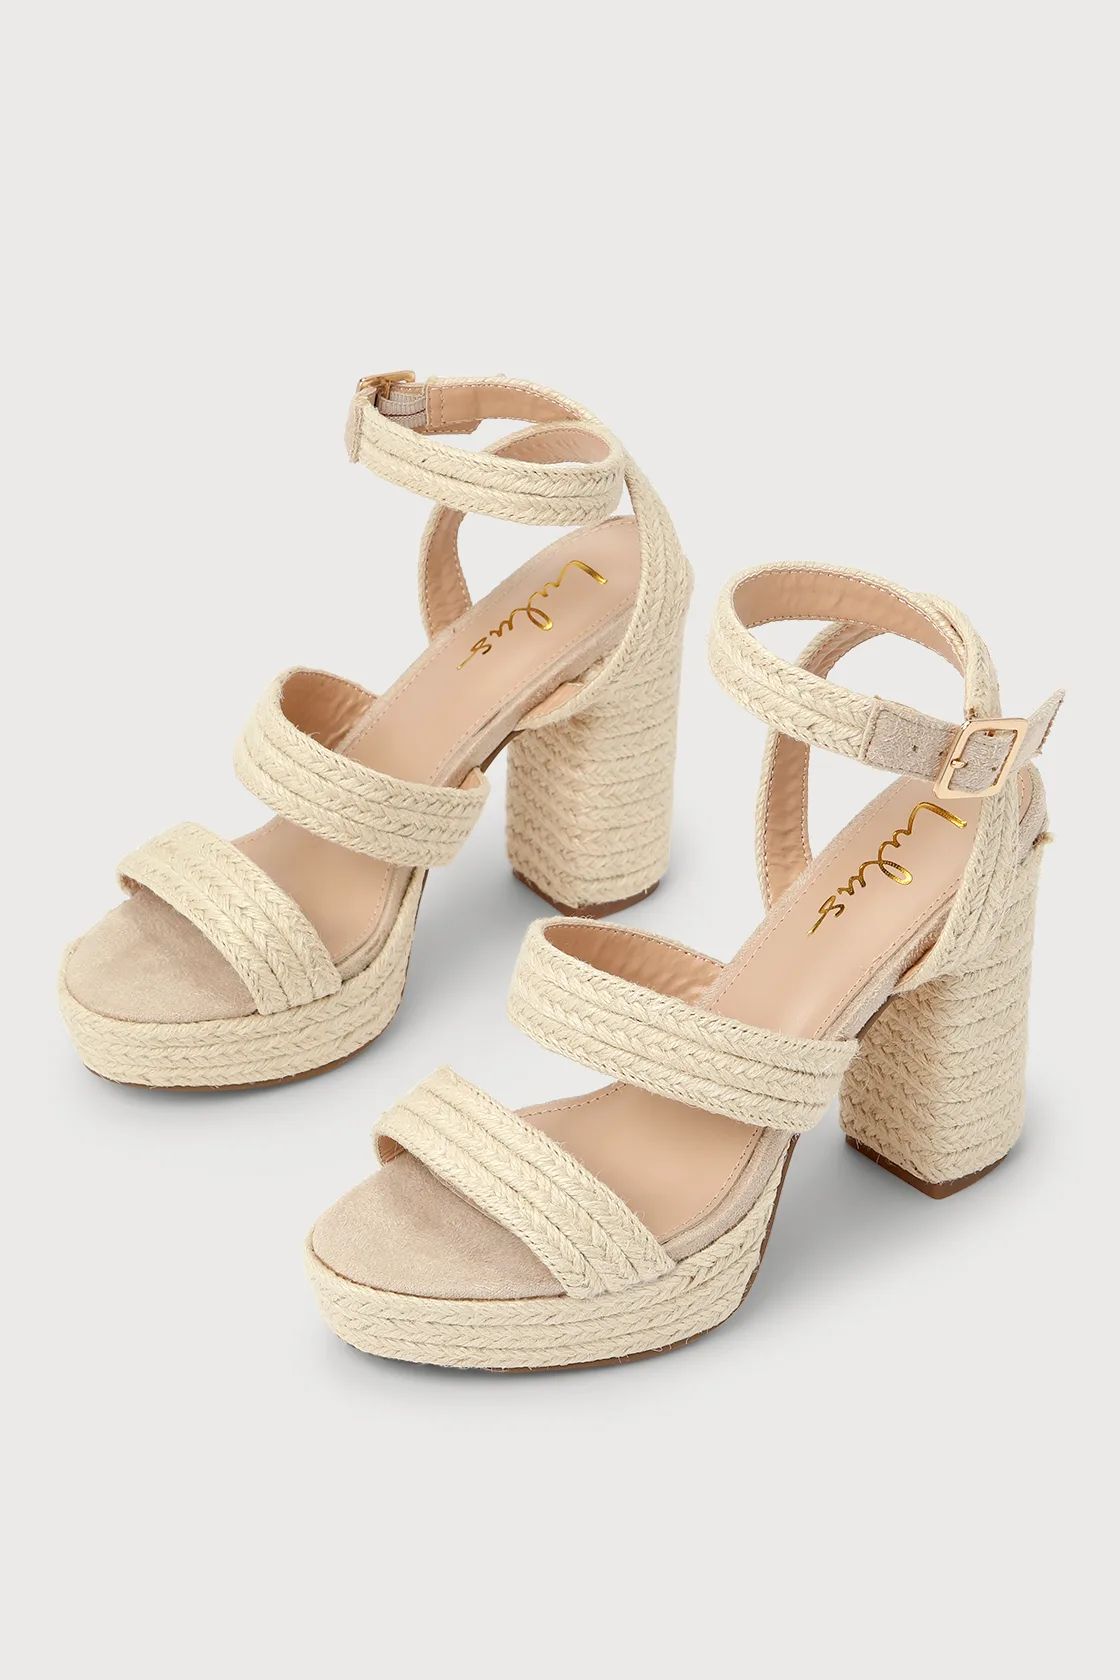 Morrin Natural Raffia Platform Ankle Strap High Heel Sandals | Lulus